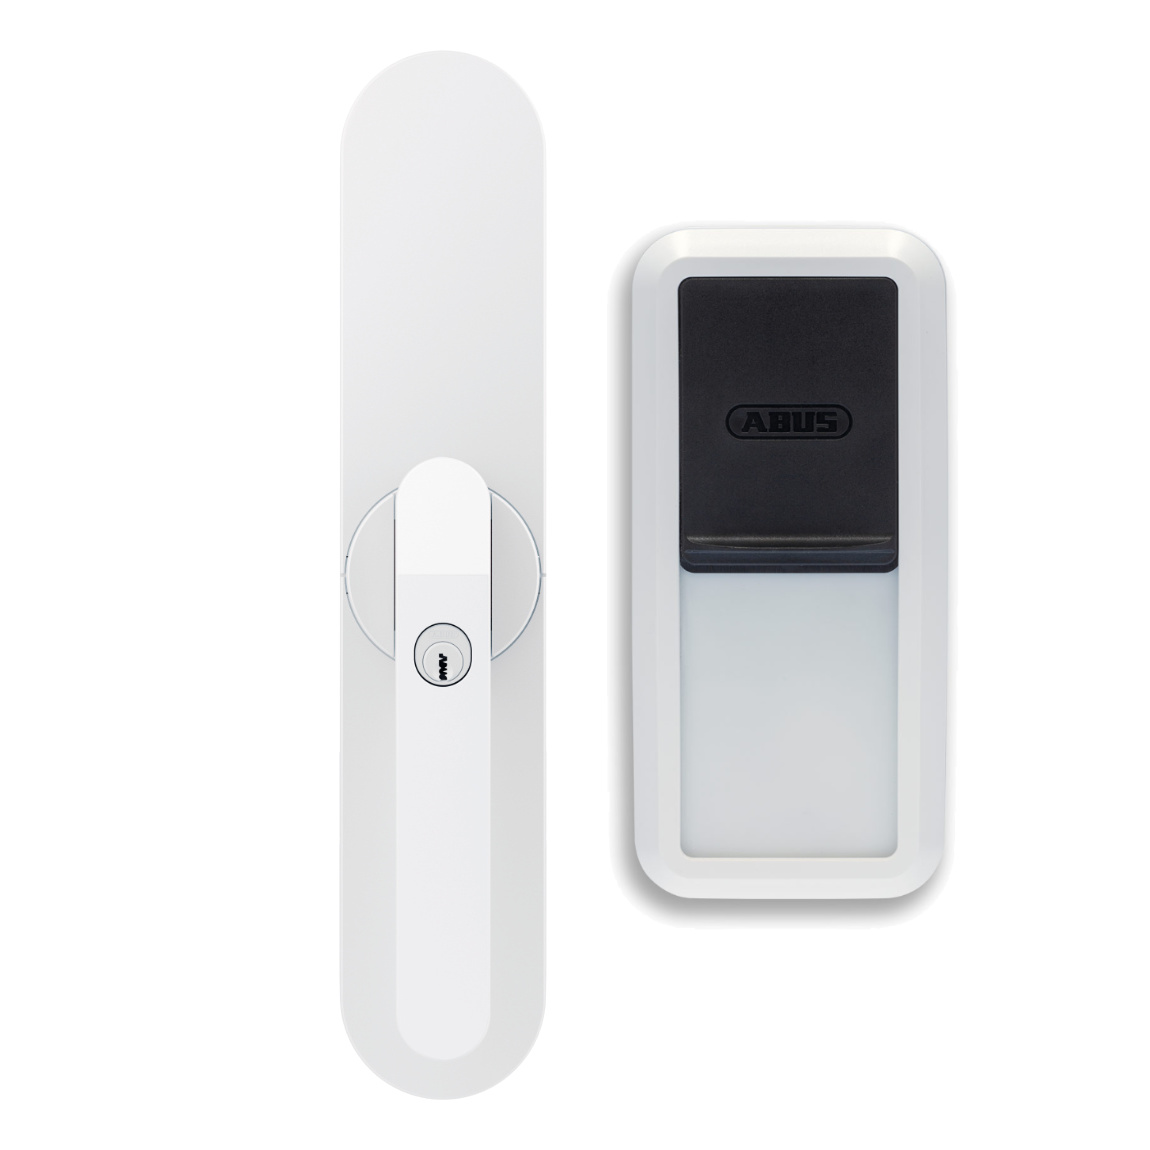 ABUS Wintecto One Fensterantrieb + Fingerscanner – Deal, Schnäppchen, sparen